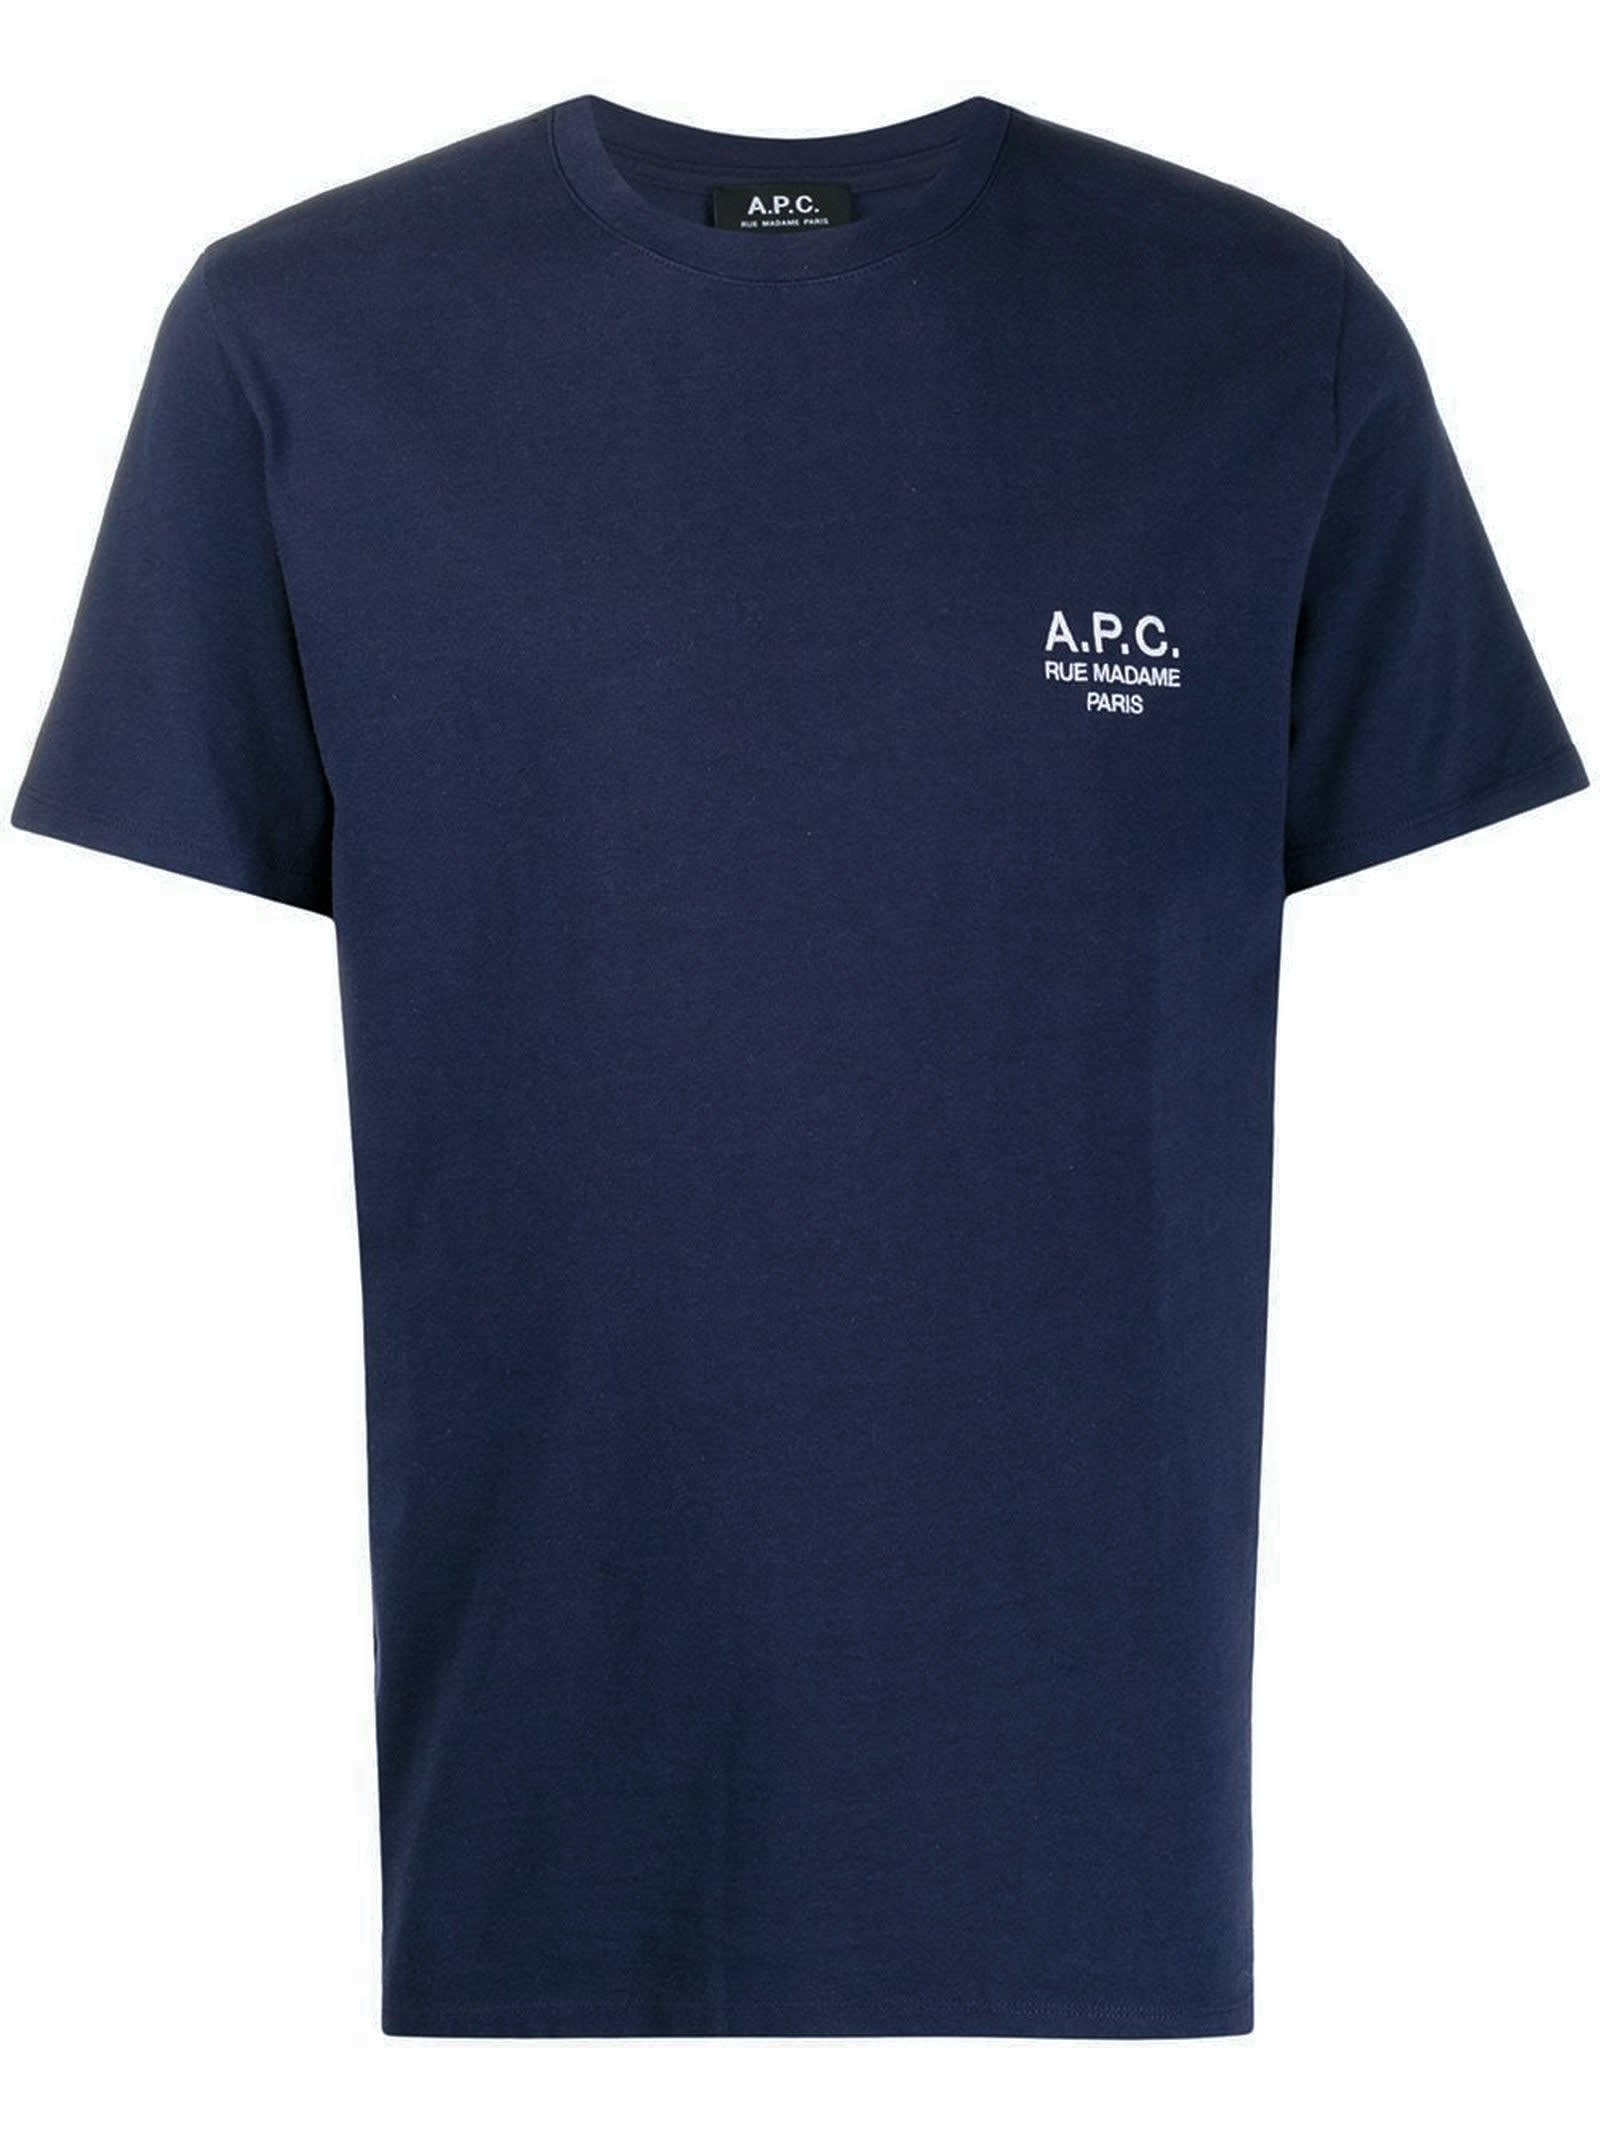 A.P.C. Blue Cotton T-shirt